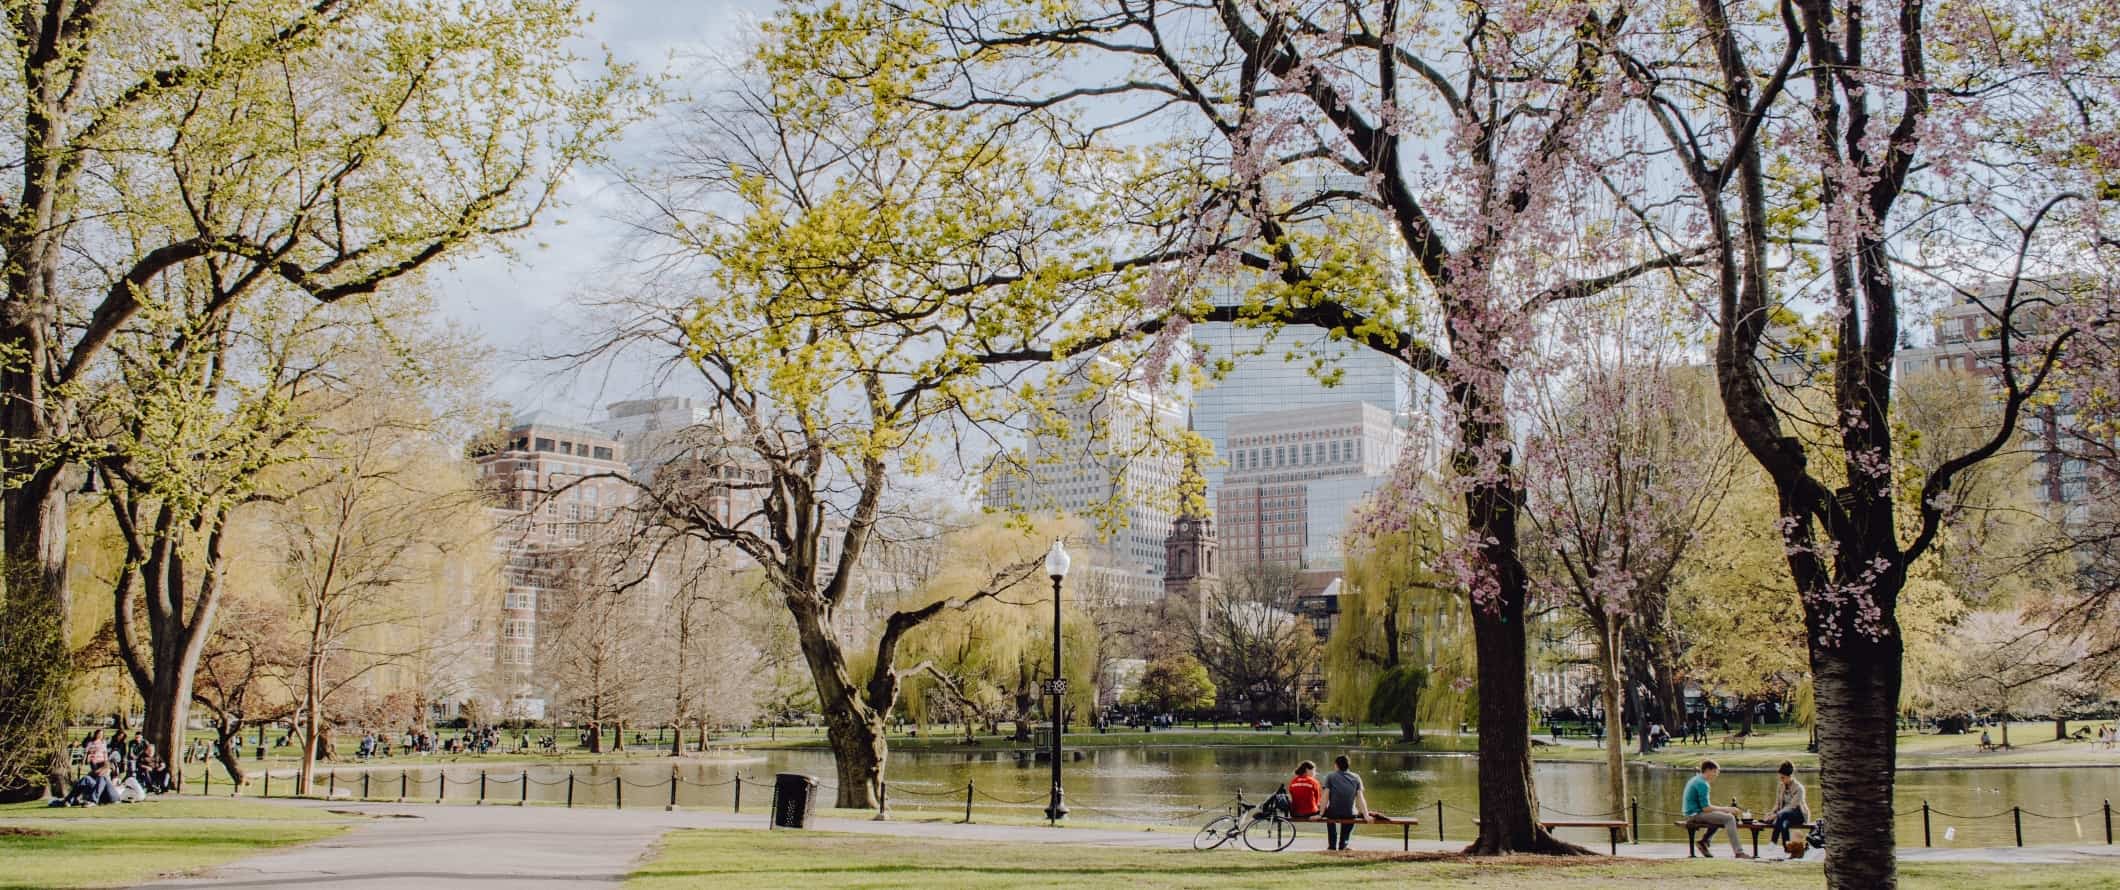 As pessoas senta m-se na lagoa com uma cereja florida e edifícios à distância no jardim público de Boston, em Boston, Massachusetts.